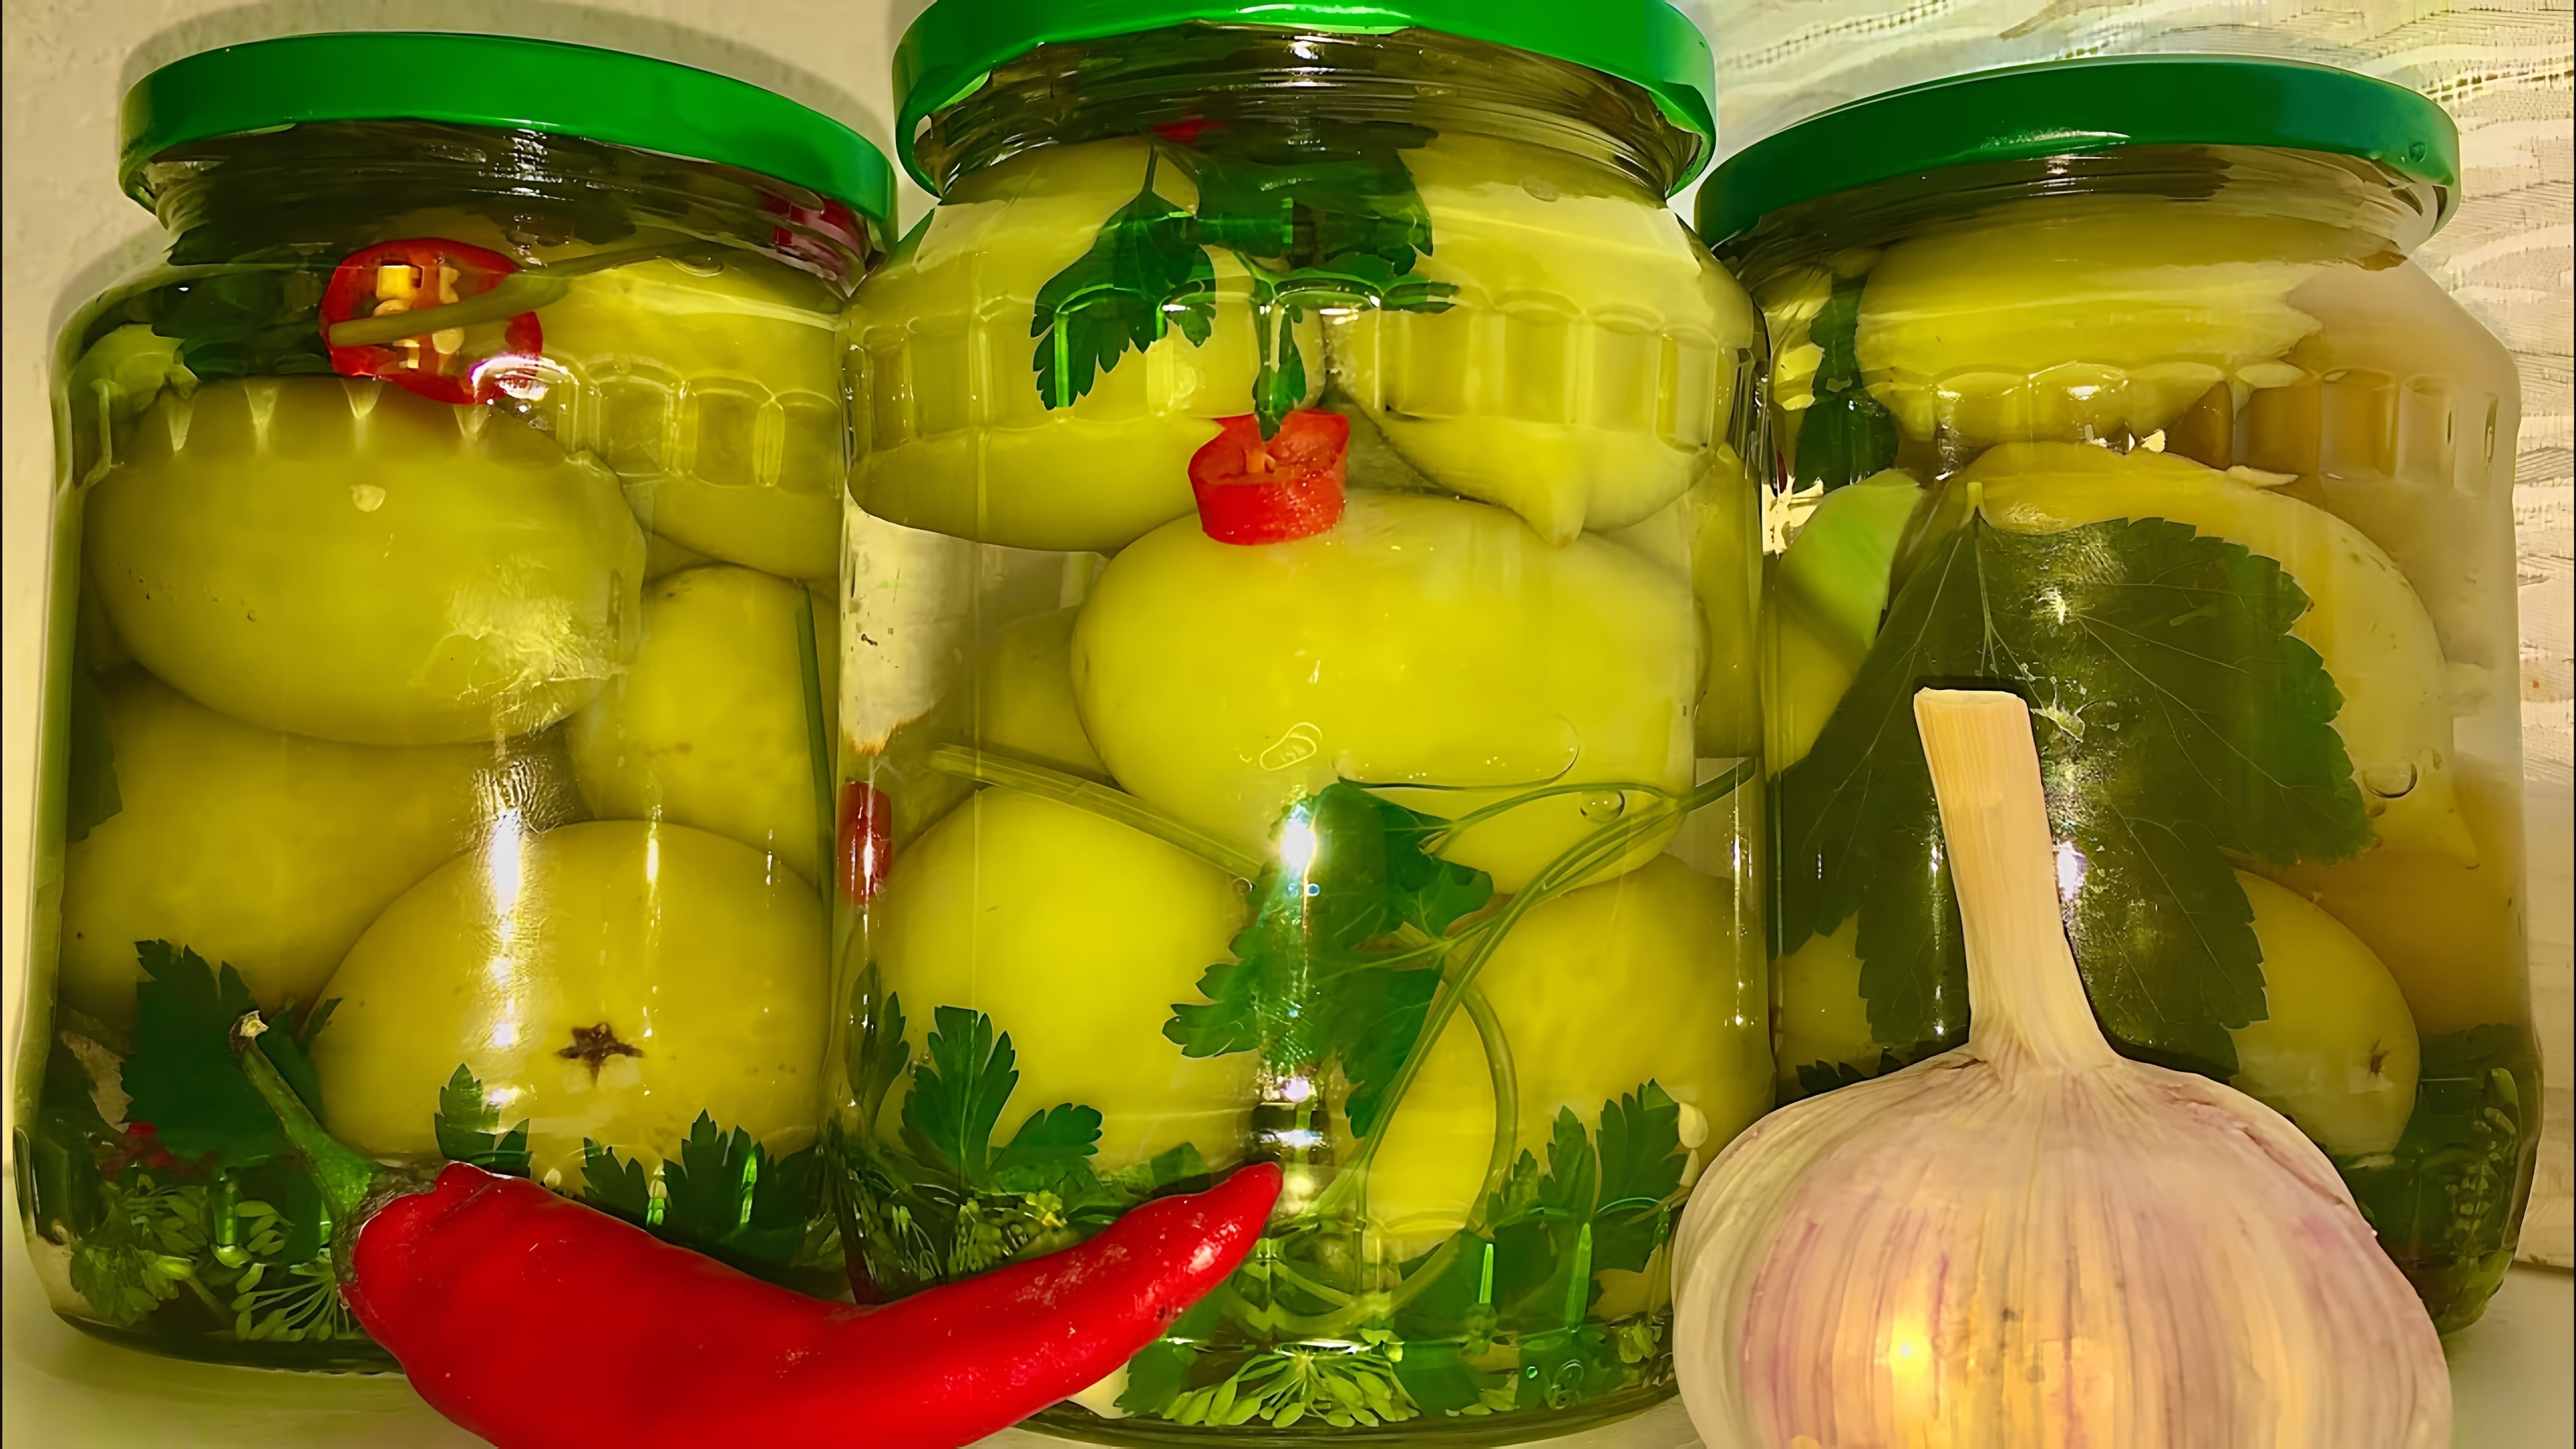 "Обалденные зеленые помидоры на зиму: рецепт улетных помидоров" - так можно назвать видео-ролик, в котором рассказывается о том, как приготовить обалденные зеленые помидоры на зиму